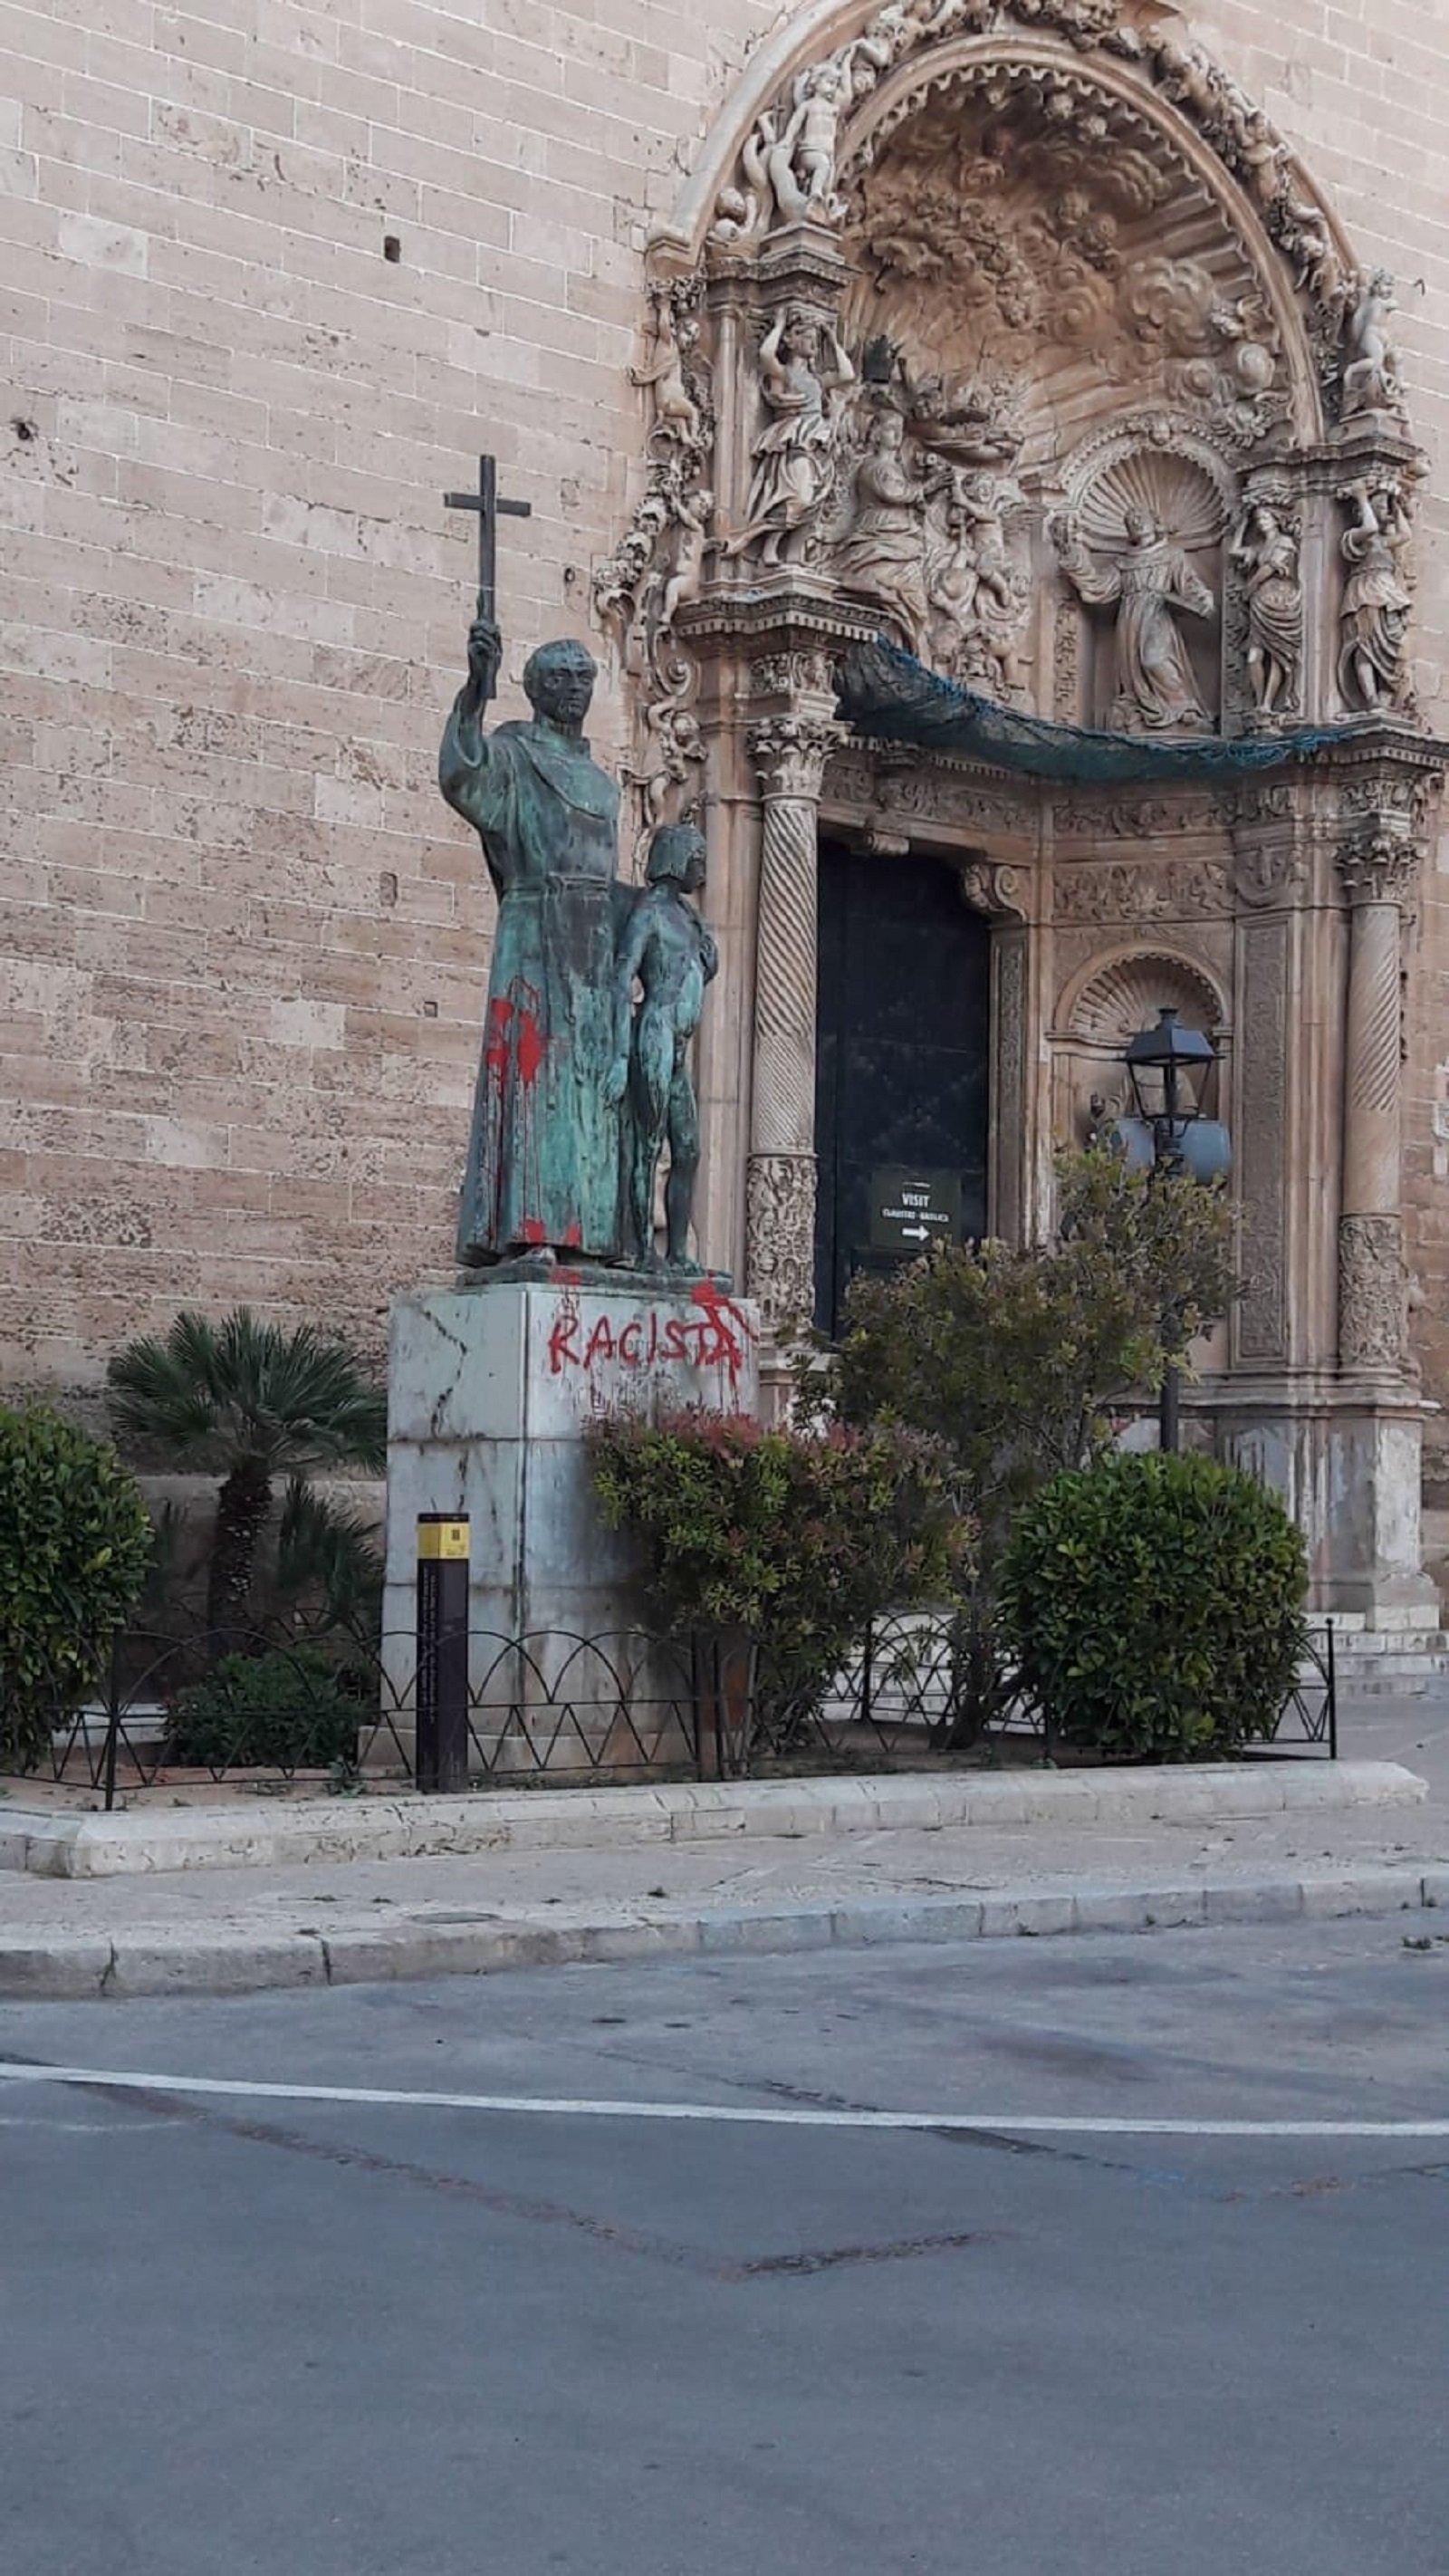 Aparece pintada y con insultos de "racista" la estatua de Juníper Serra en Palma